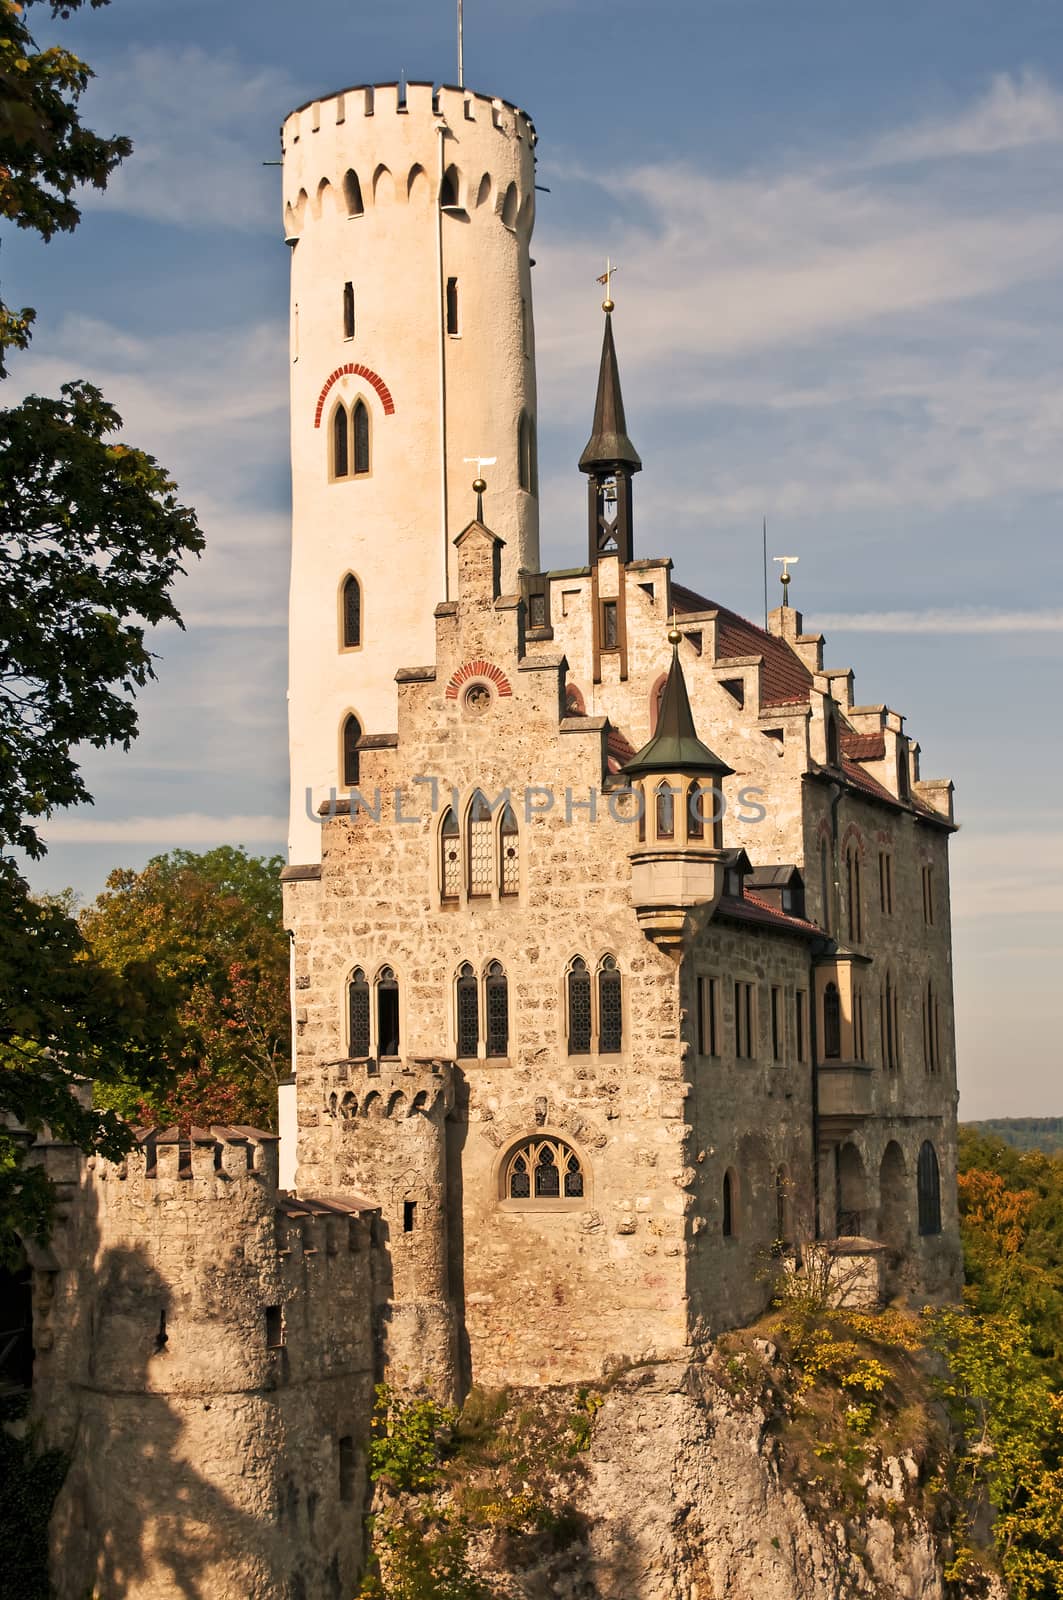 Castle of Lichtenstein by Jochen